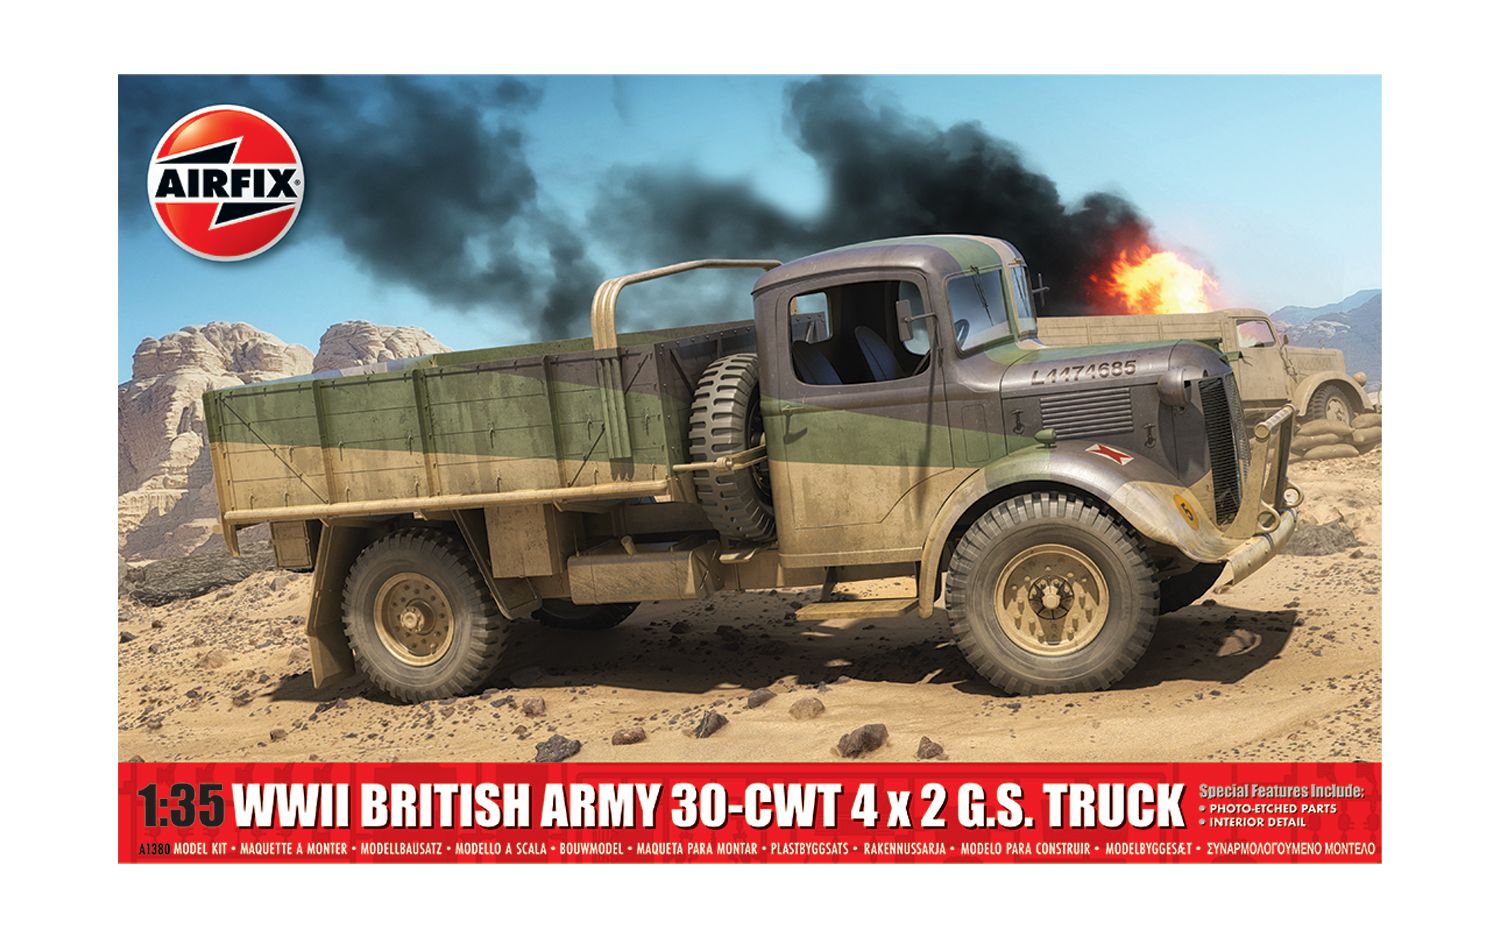 1/35 イギリス陸軍 30-cwt 4x2 GSトラック